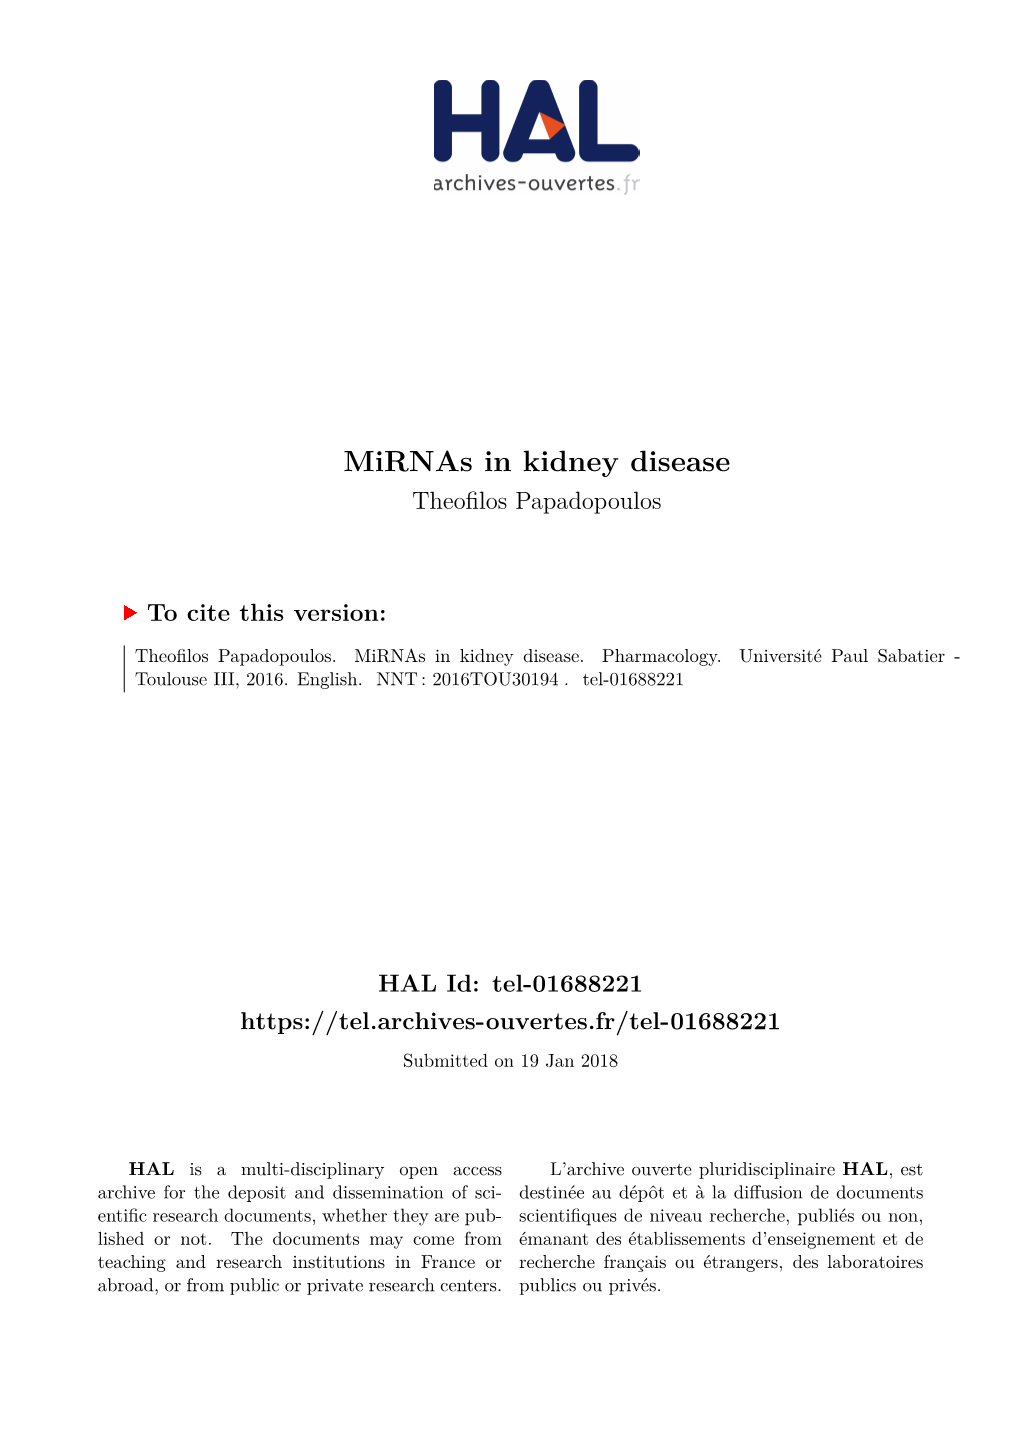 Mirnas in Kidney Disease Theofilos Papadopoulos